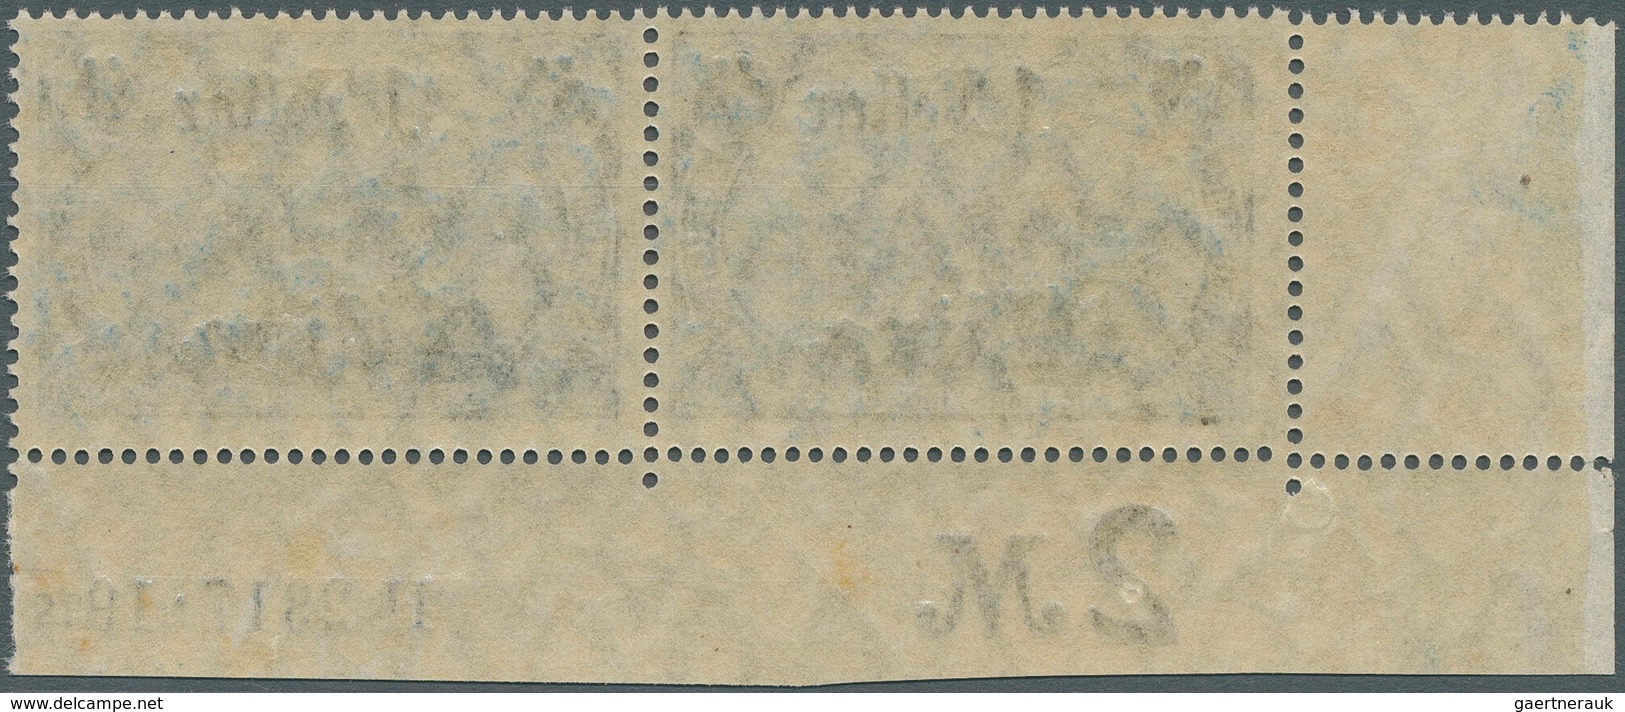 Deutsche Post In China: 1919, Freimarken 1 Dollar Auf 2 Mark, Kriegsdruck, Zähnung 26:17, Abstand 10 - China (kantoren)